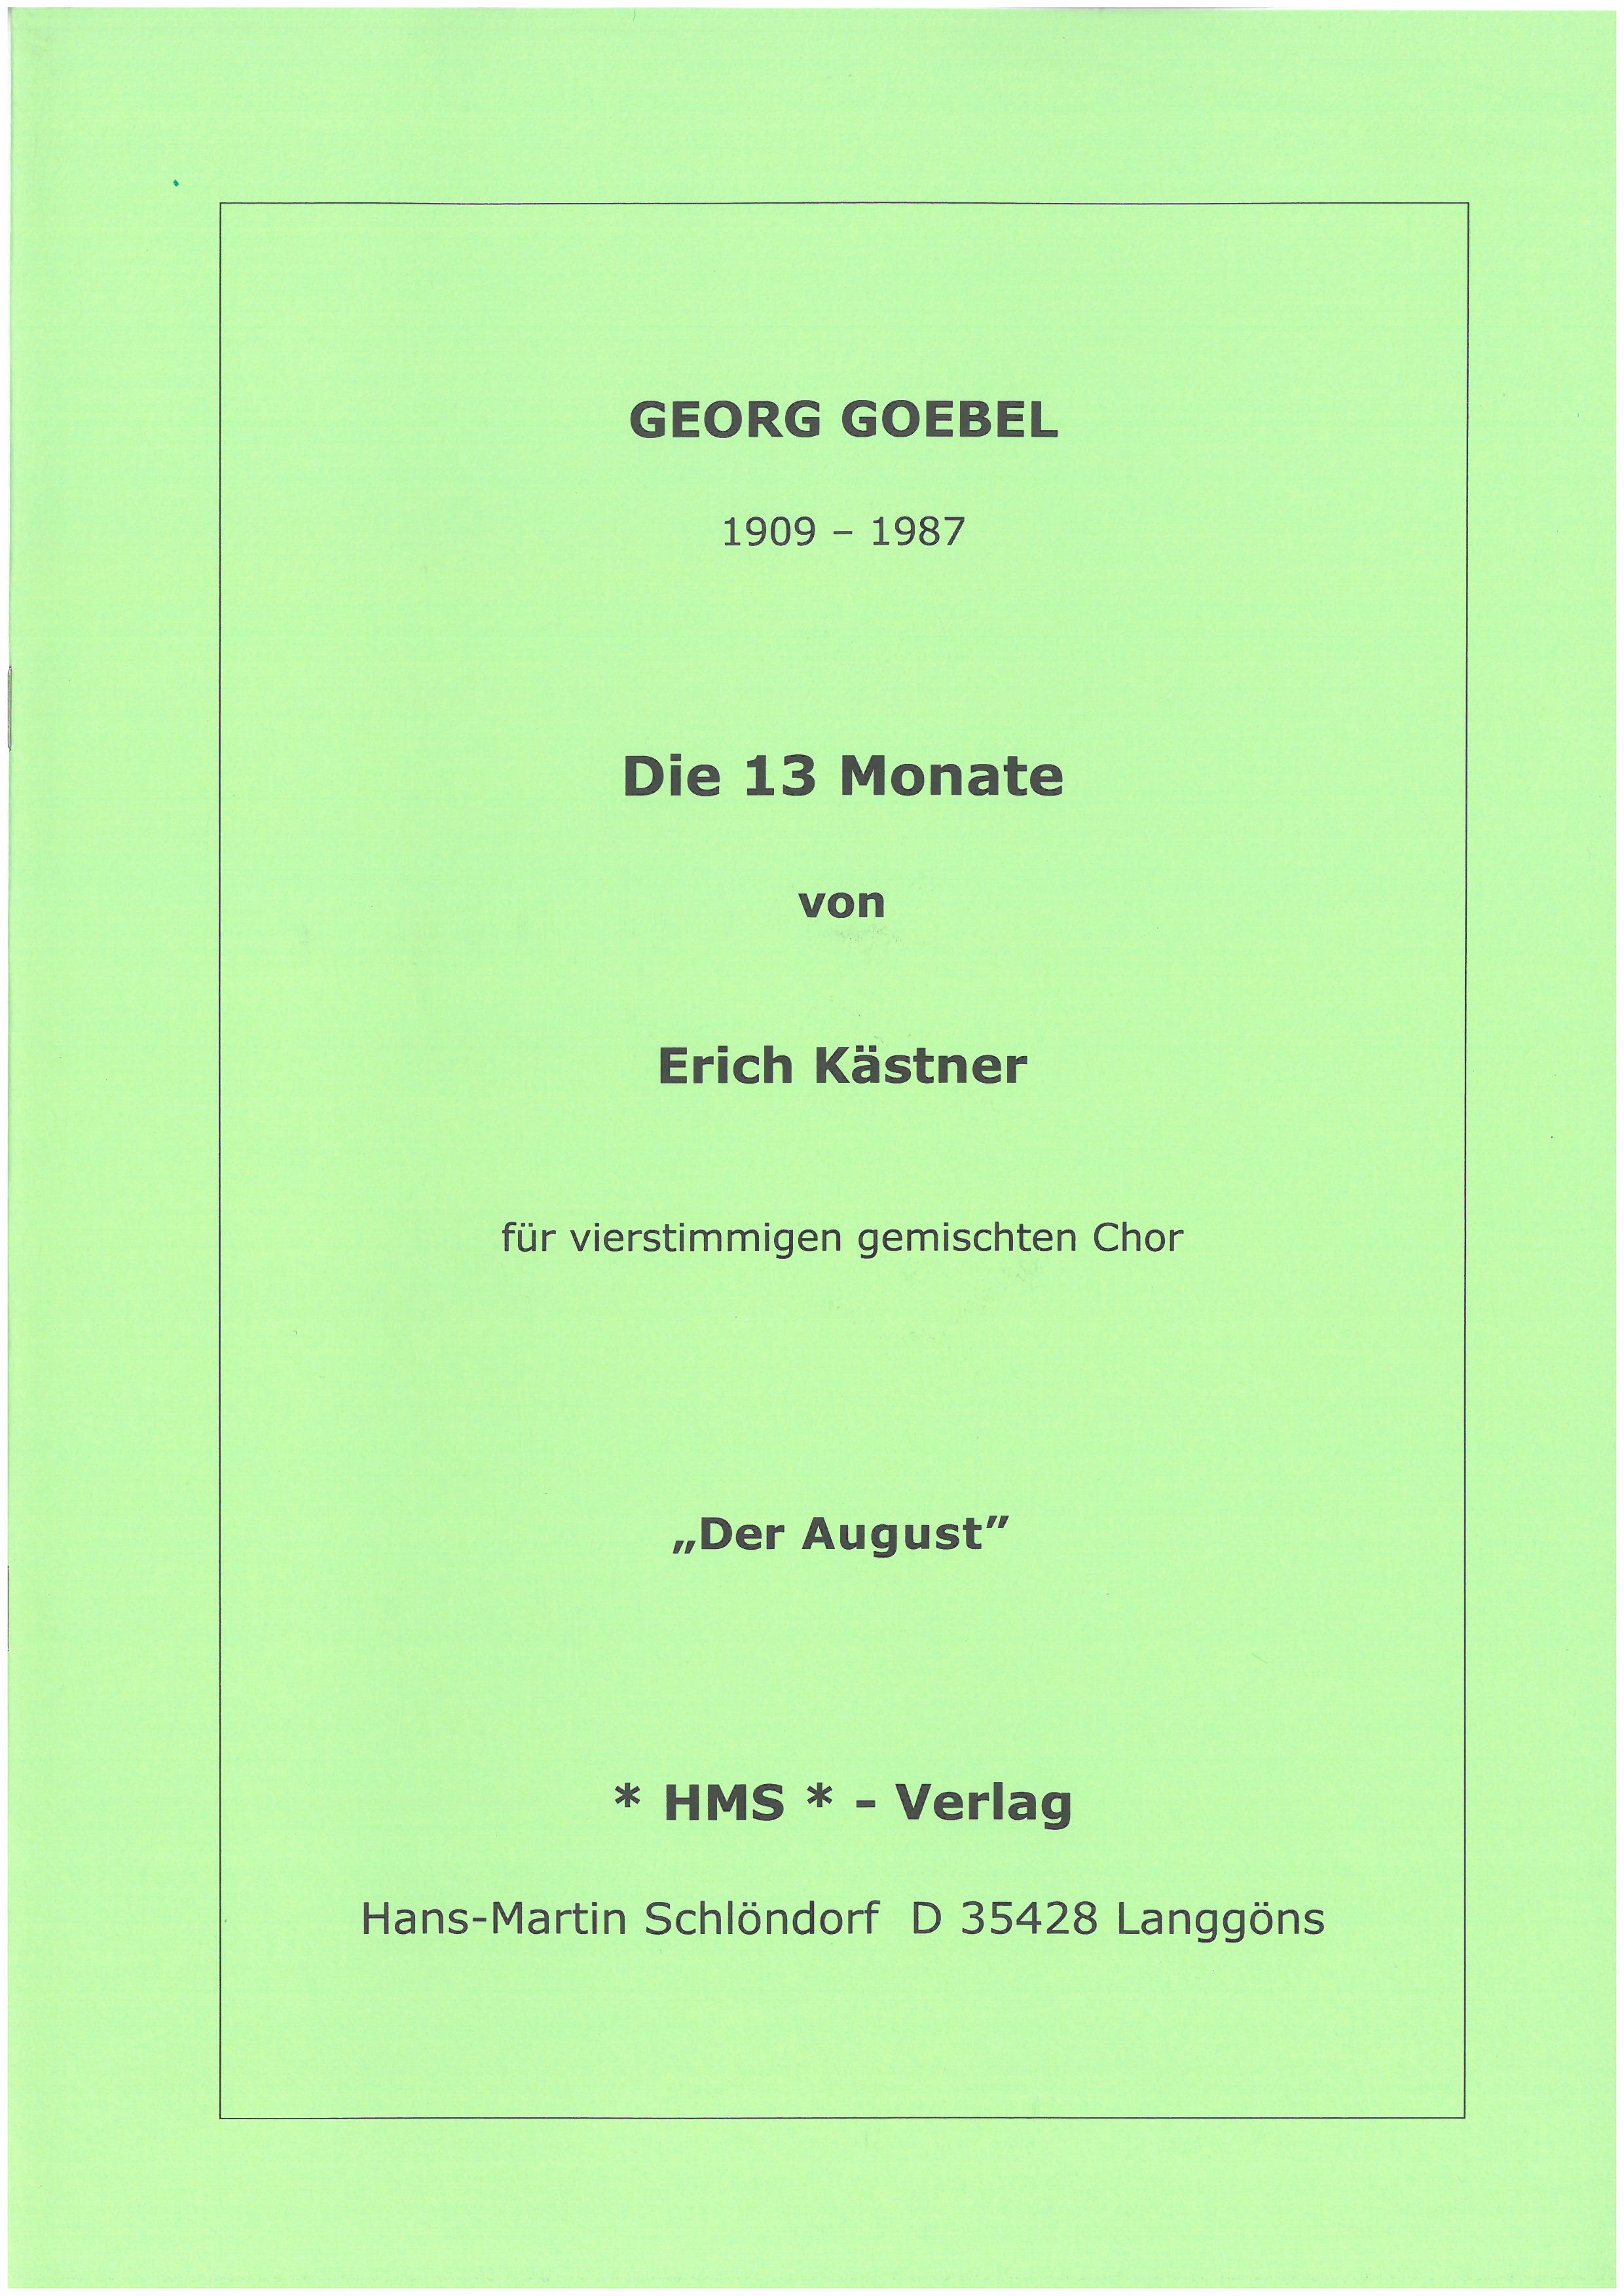 August aus dem Chorzyklus 13 Monate - nach Erich Kästner